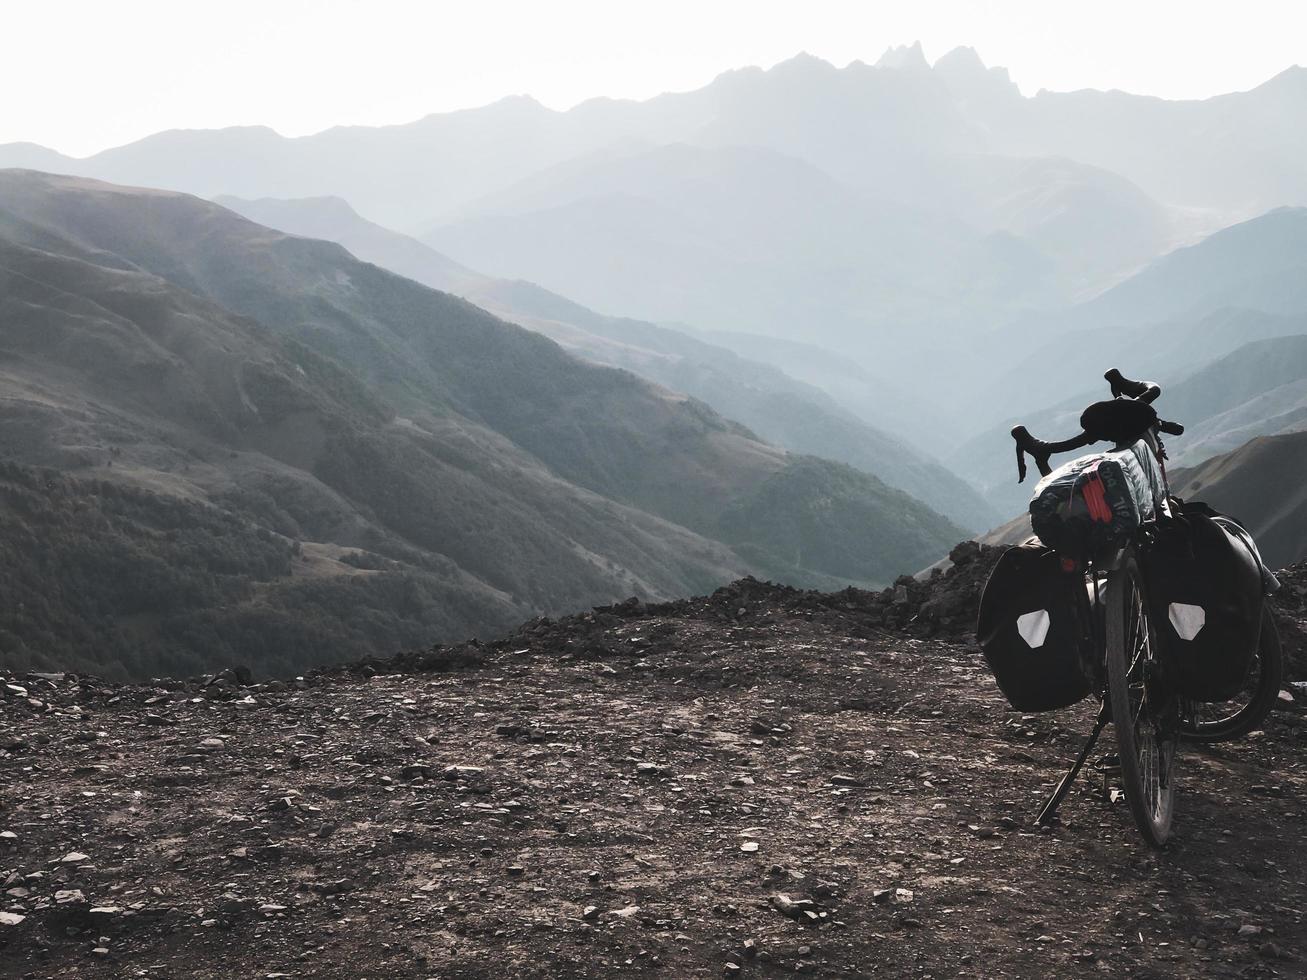 carrinhos de bicicleta de turismo carregados com vista panorâmica dramática da montanha e sem ciclista foto